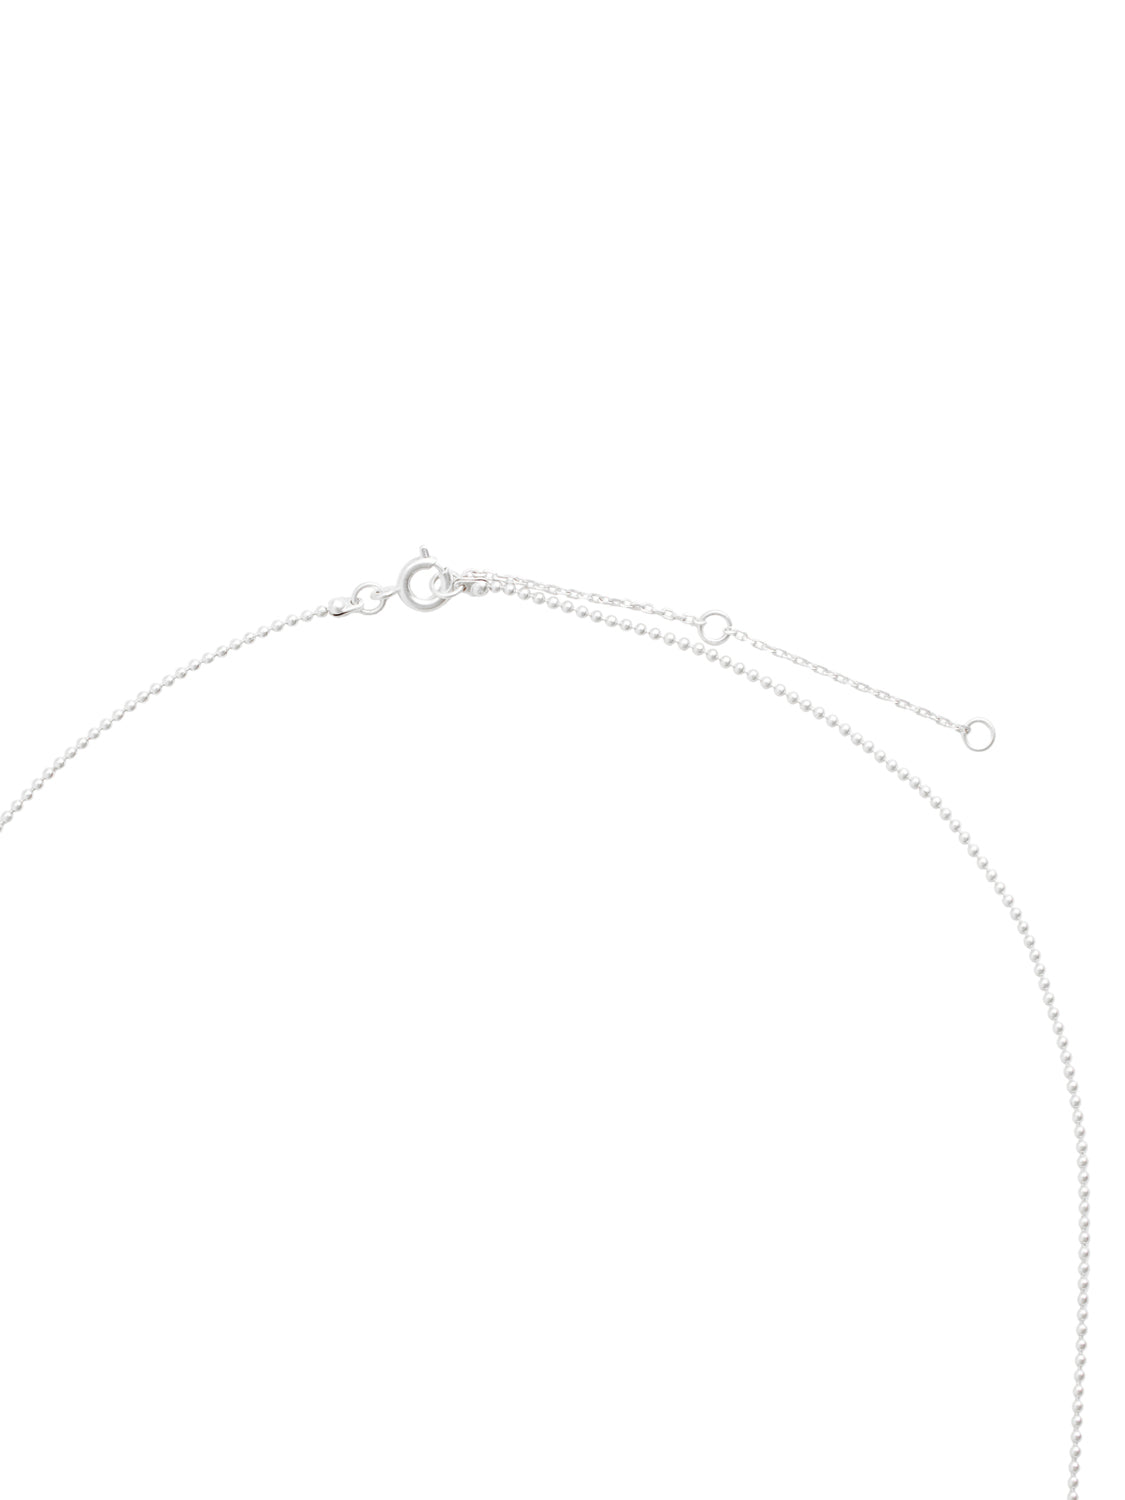 VIEFJ Necklace - silver colour